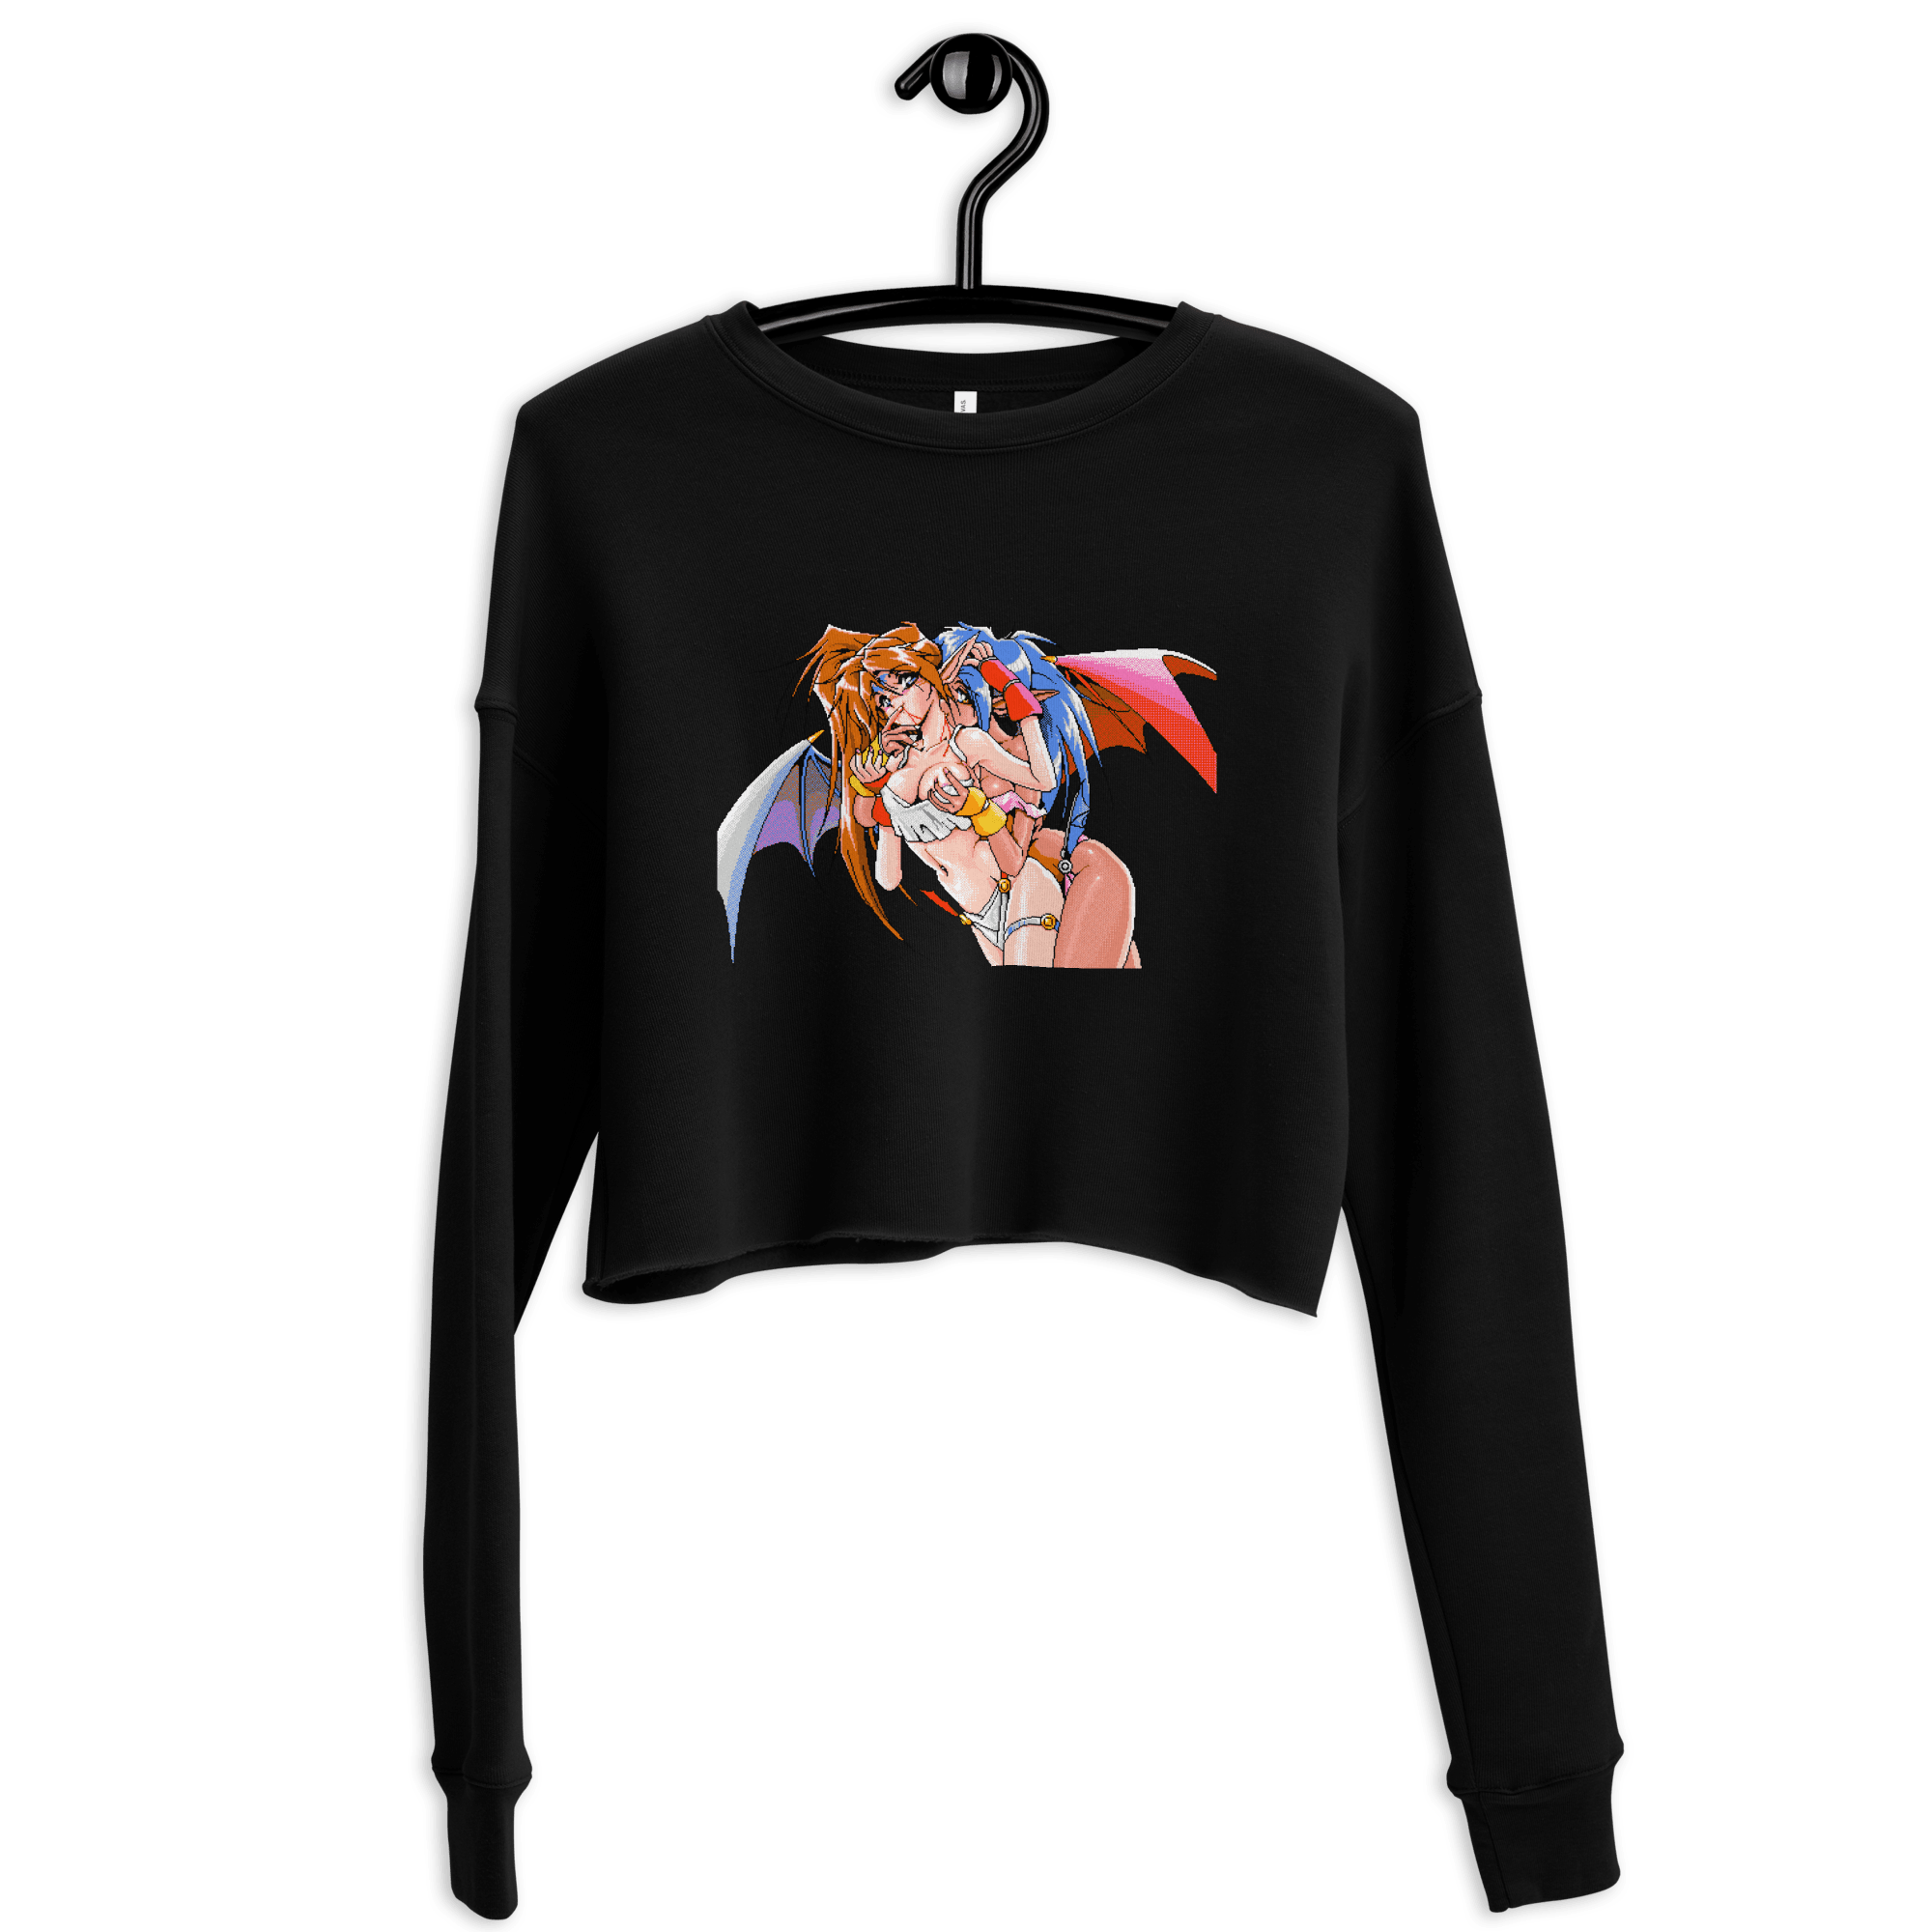 Ecquando® Cropped Sweatshirt - Kikillo Club